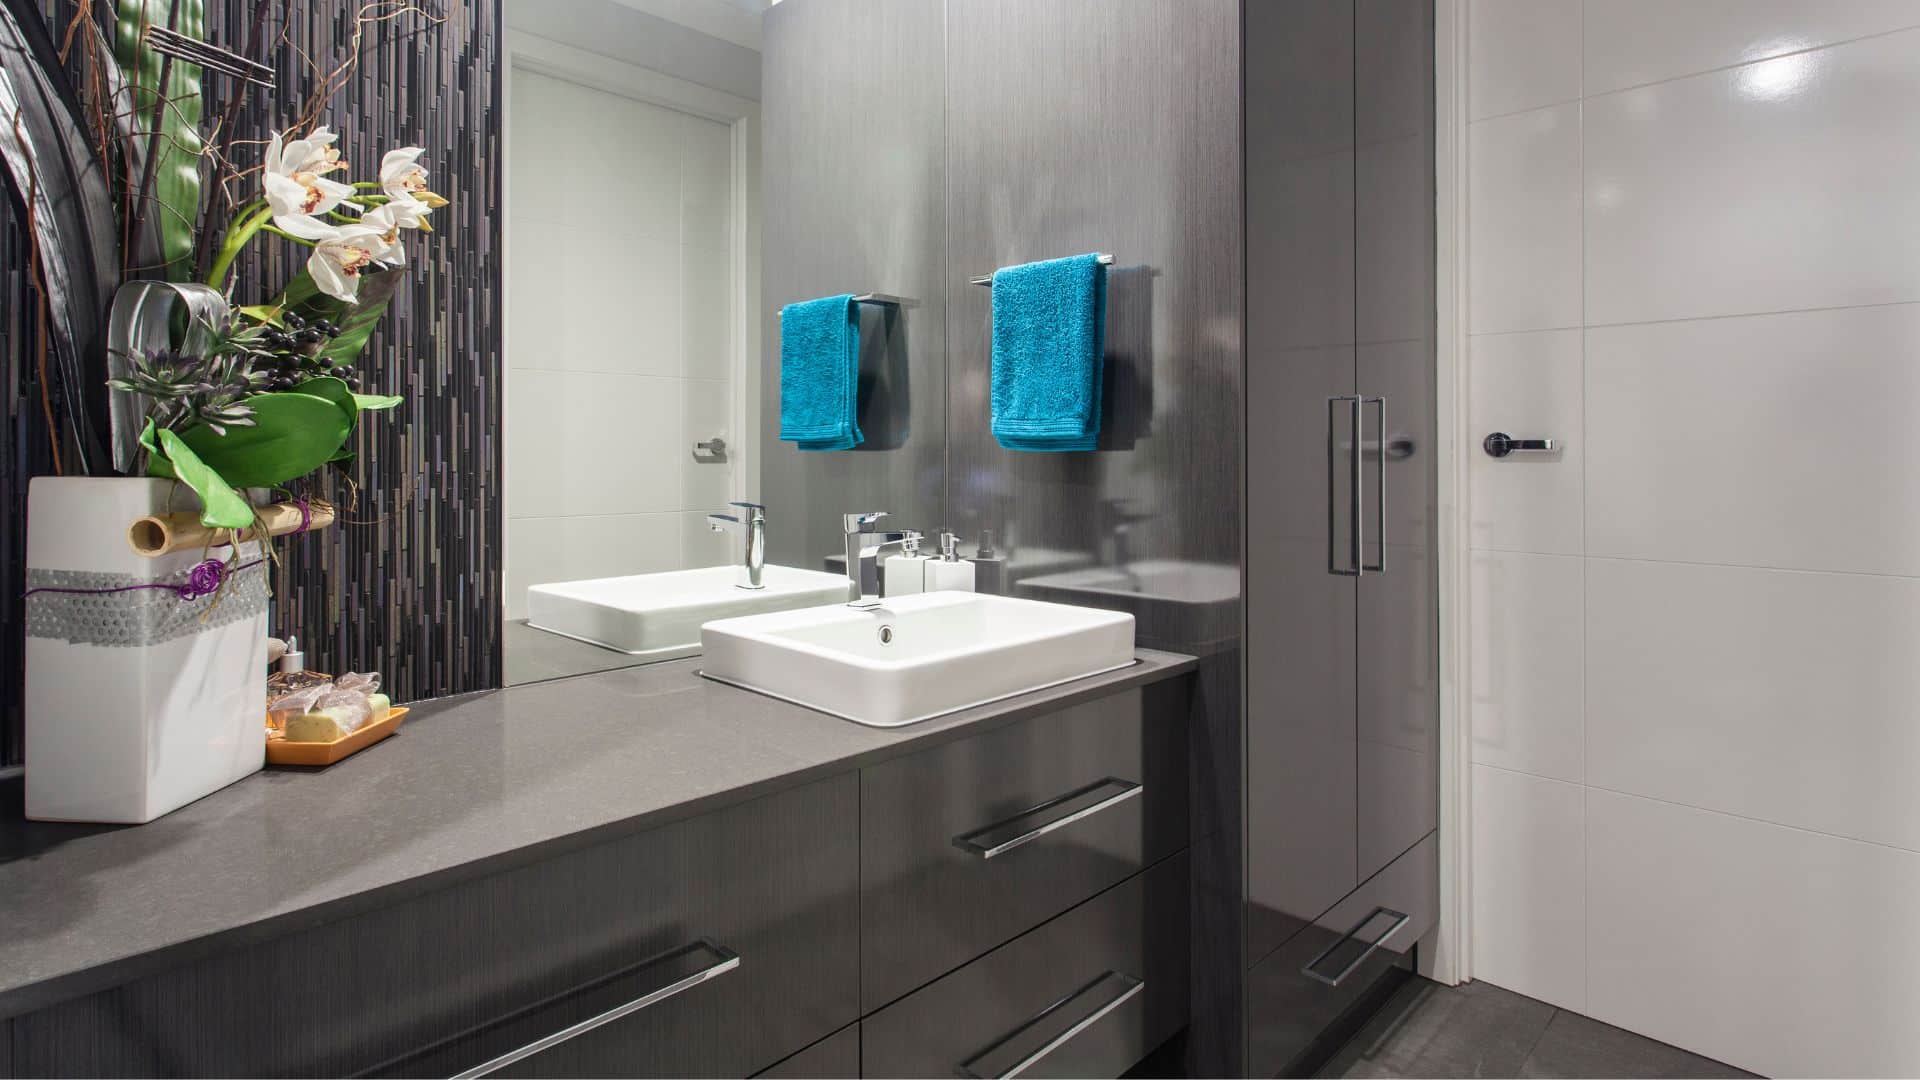 Small bathroom with dark grey bathroom cabinet and grey countertop